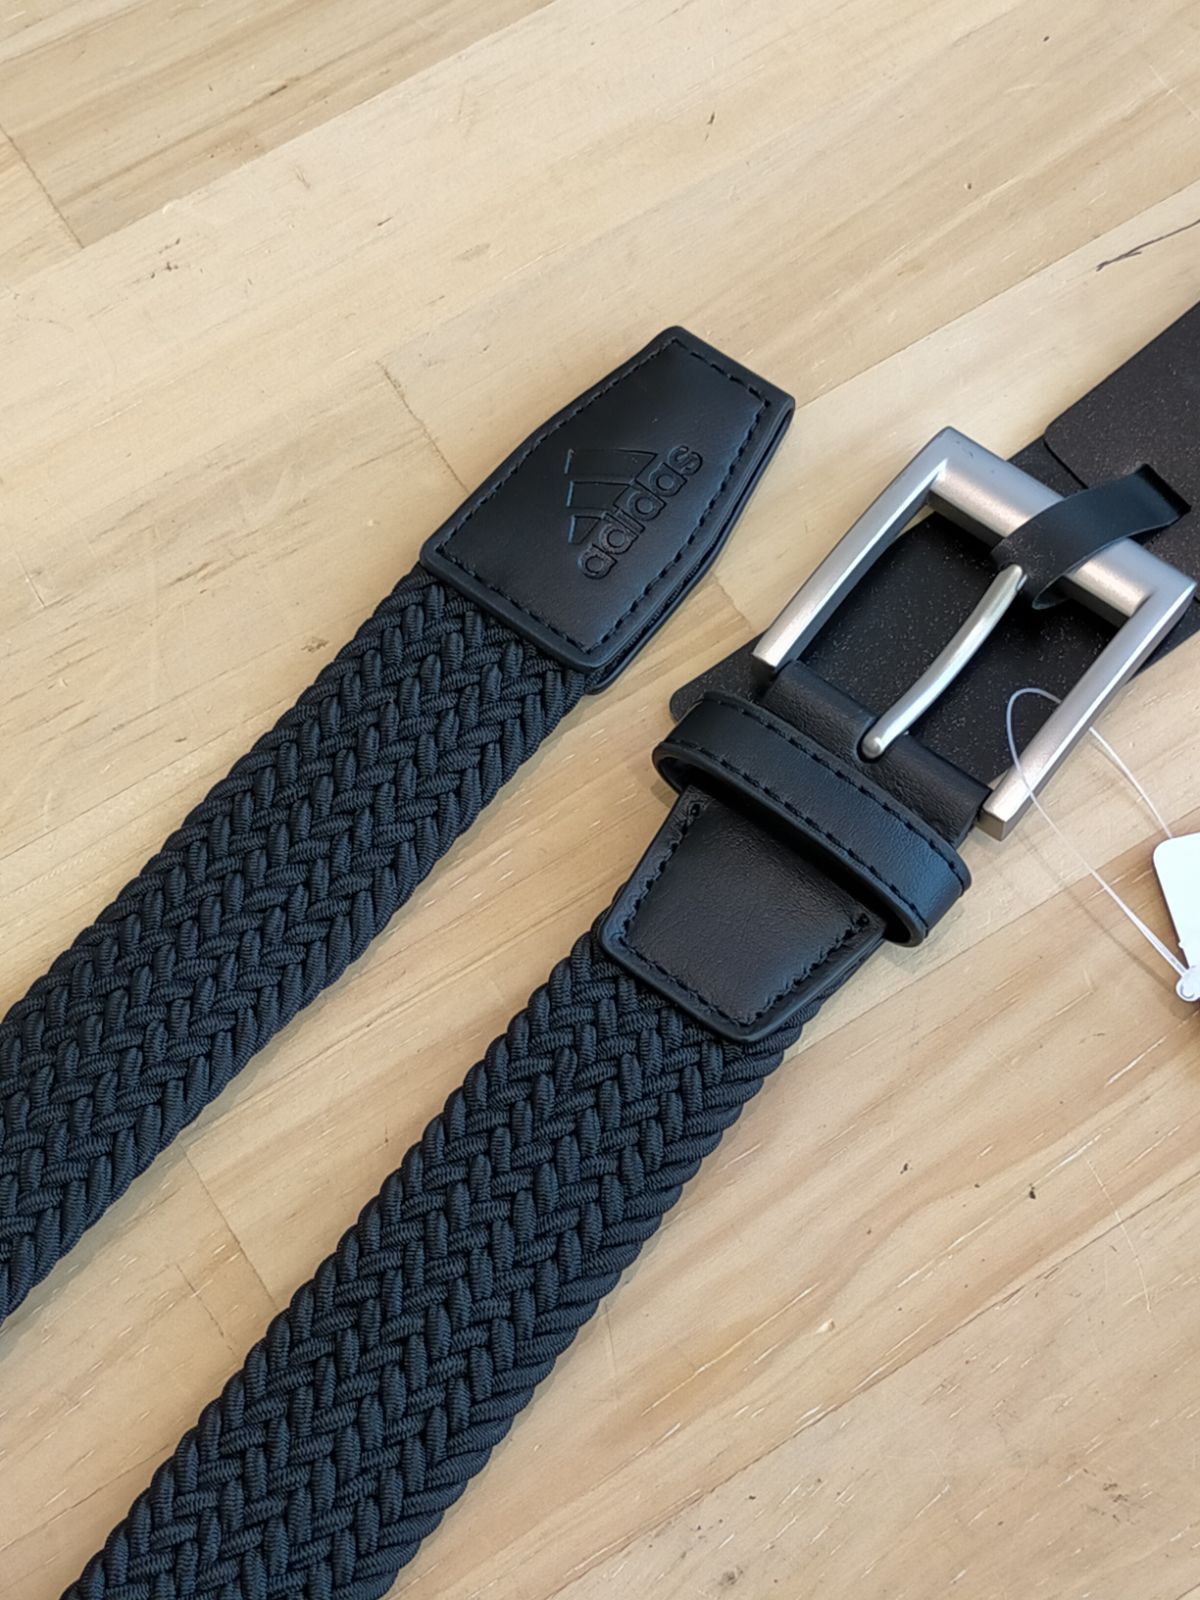 adidas Golf braided stretch belt in black